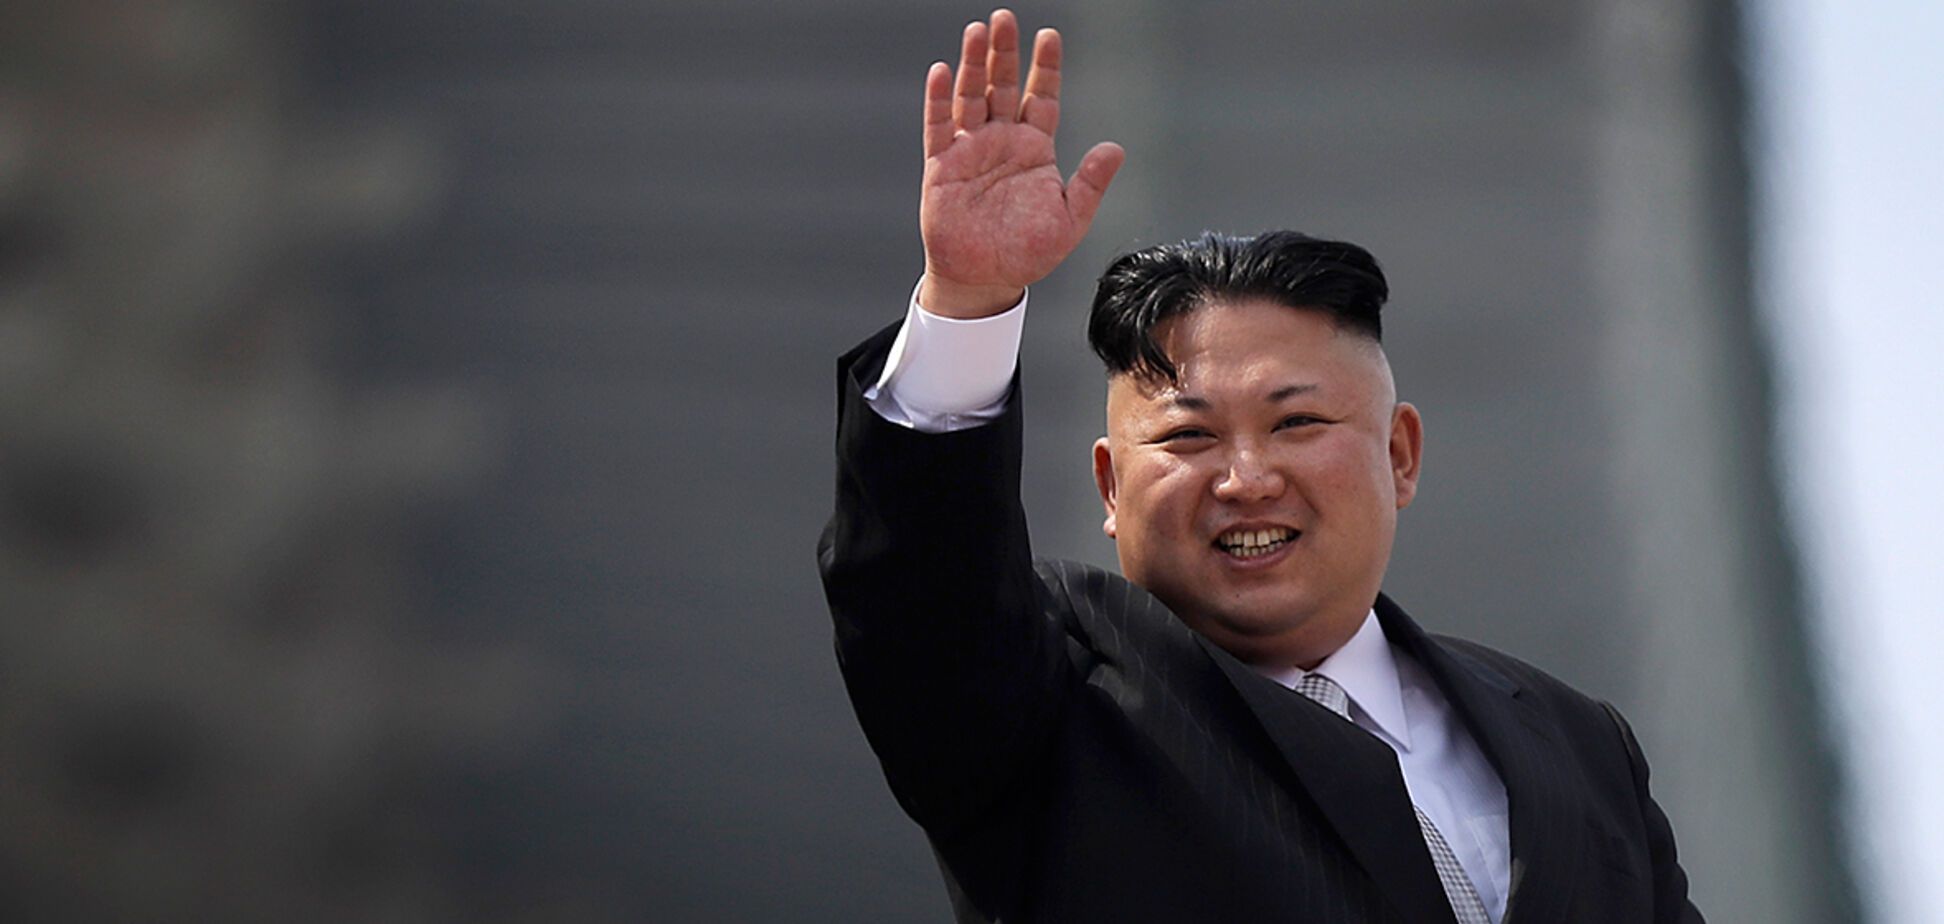 Паника в КНДР: после слухов о смерти Ким Чен Ына люди 'штурмовали' магазины